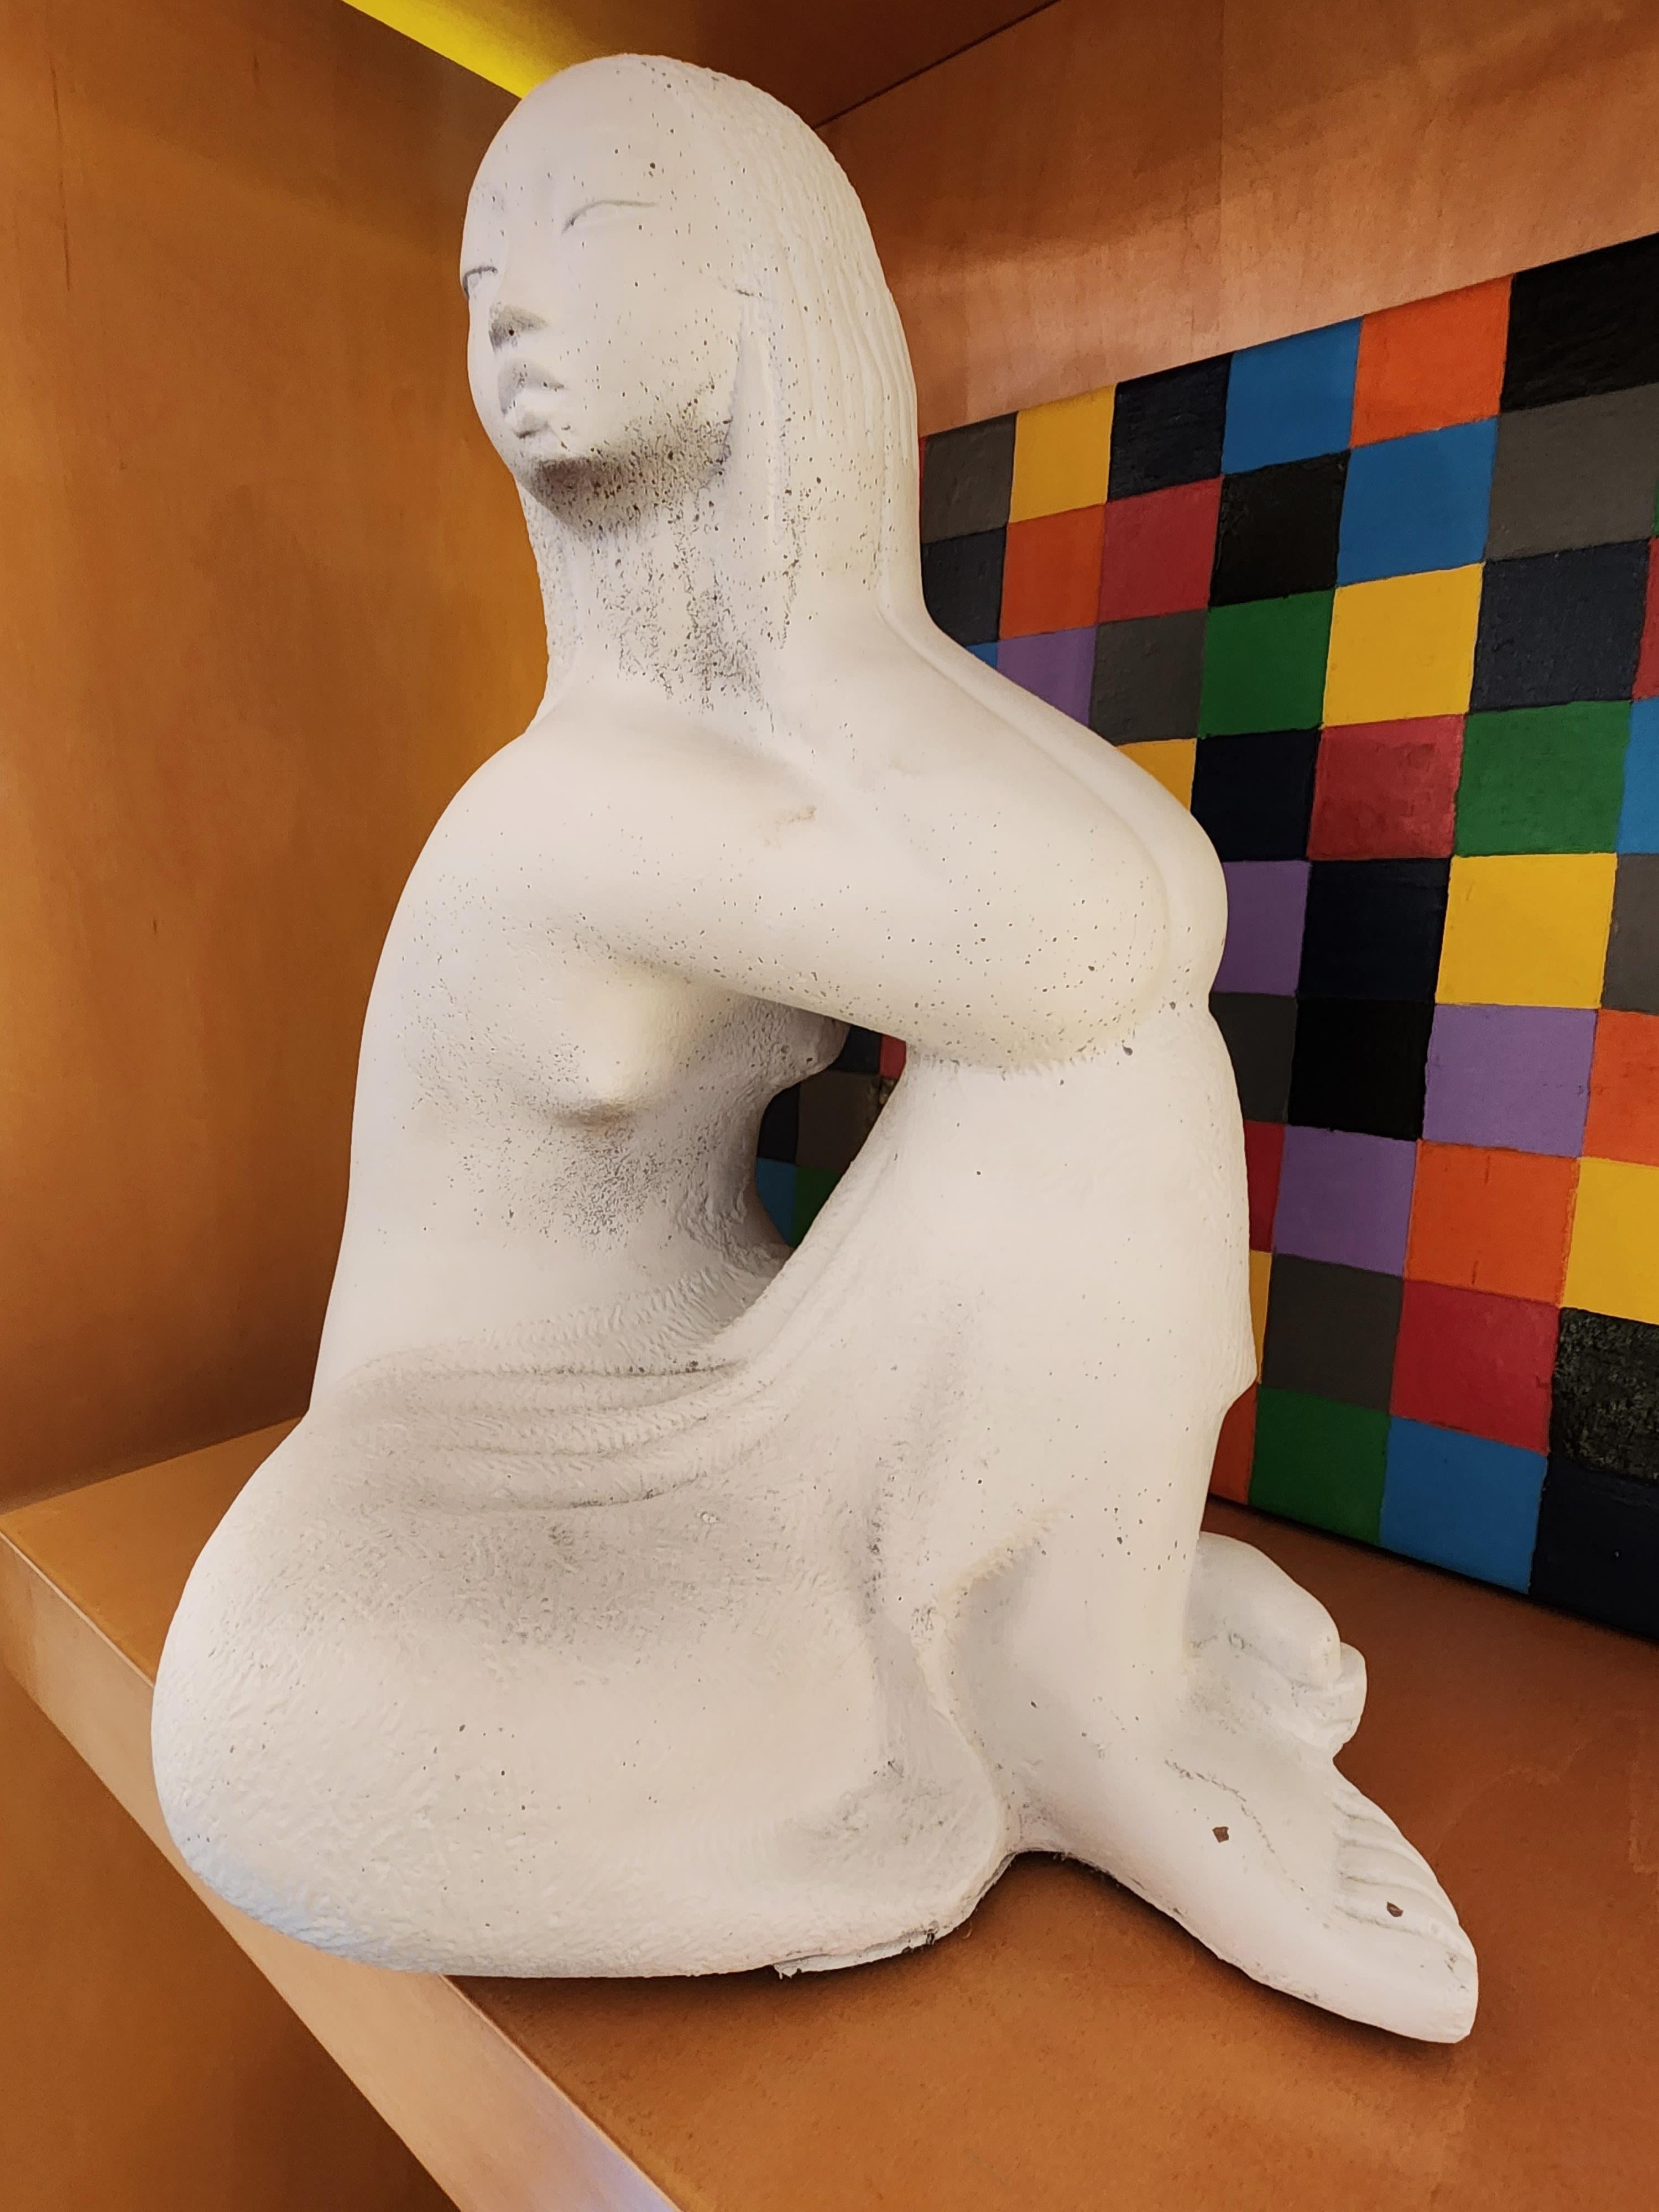 Chuck Dodson Florida Artist Seated Nude Sculpture circa 1975

Le produit proposé à la vente est un  circa 1975 sculpture de composition figurative de nu assis par le célèbre artiste de Floride Chuck Dodson (1908 - 1993).  L'artiste était un